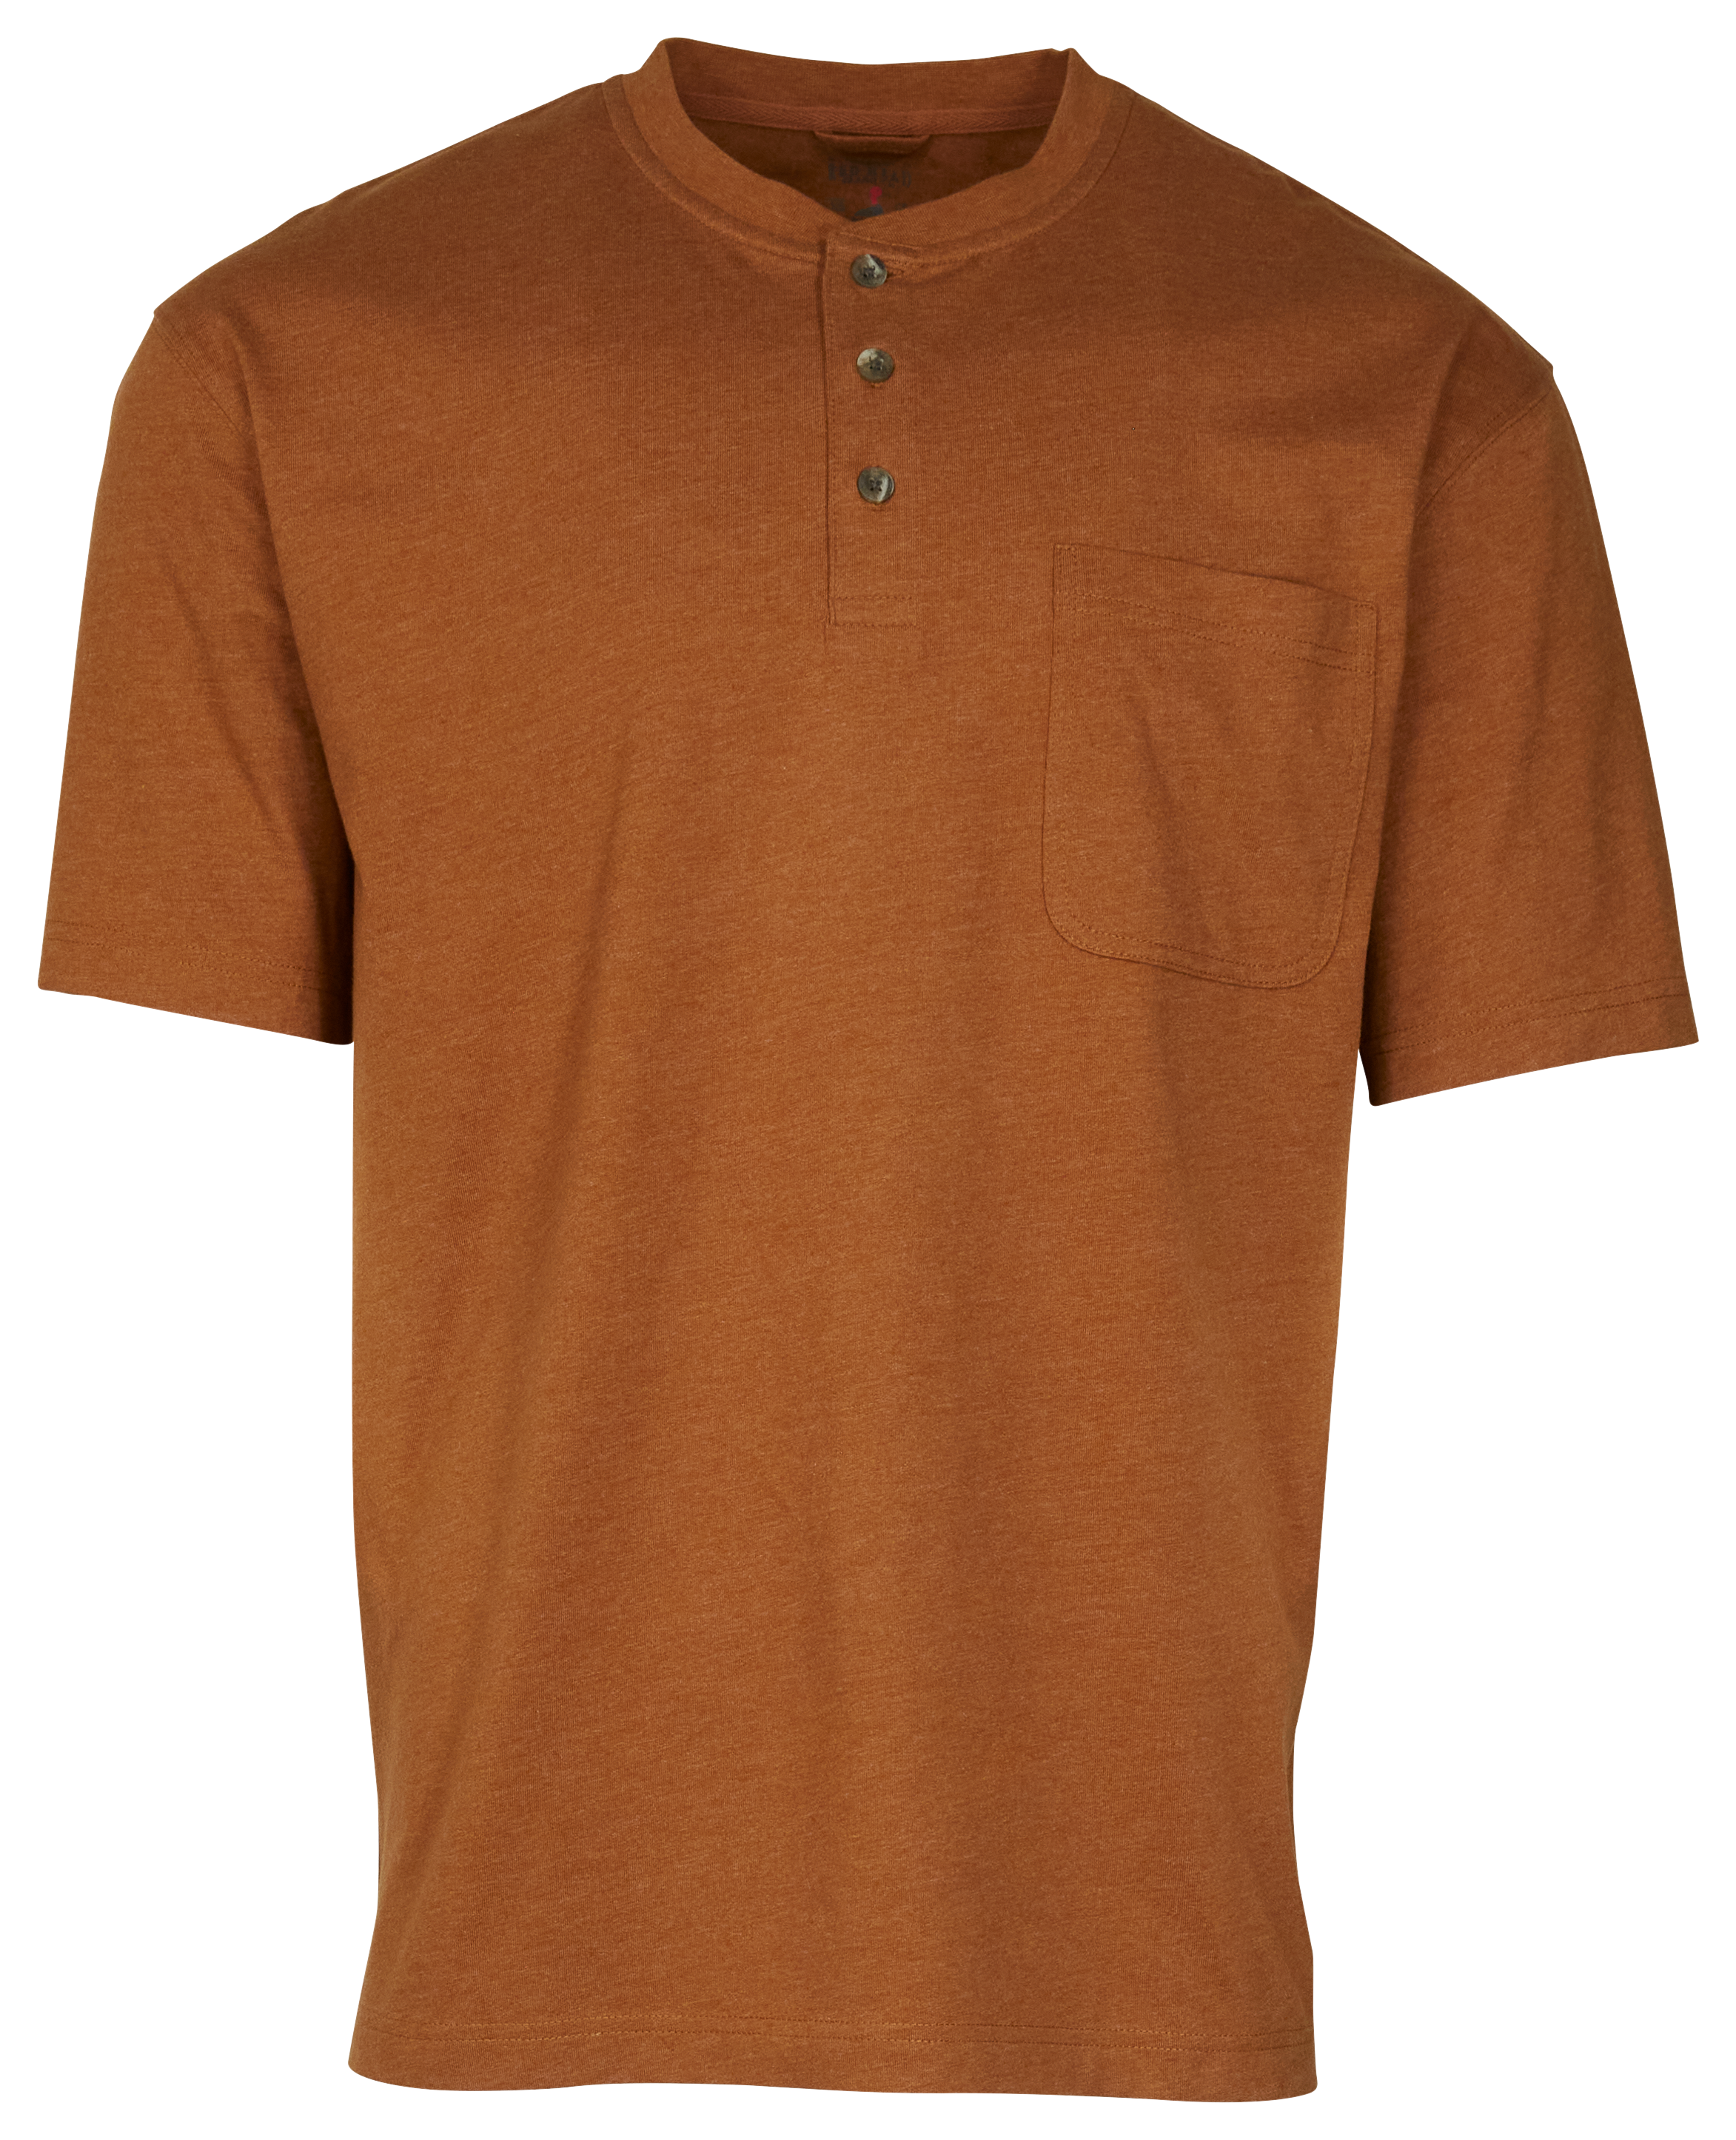 RedHead Henley Pocket Short-Sleeve Shirt for Men - Bronze Heather - 4XL